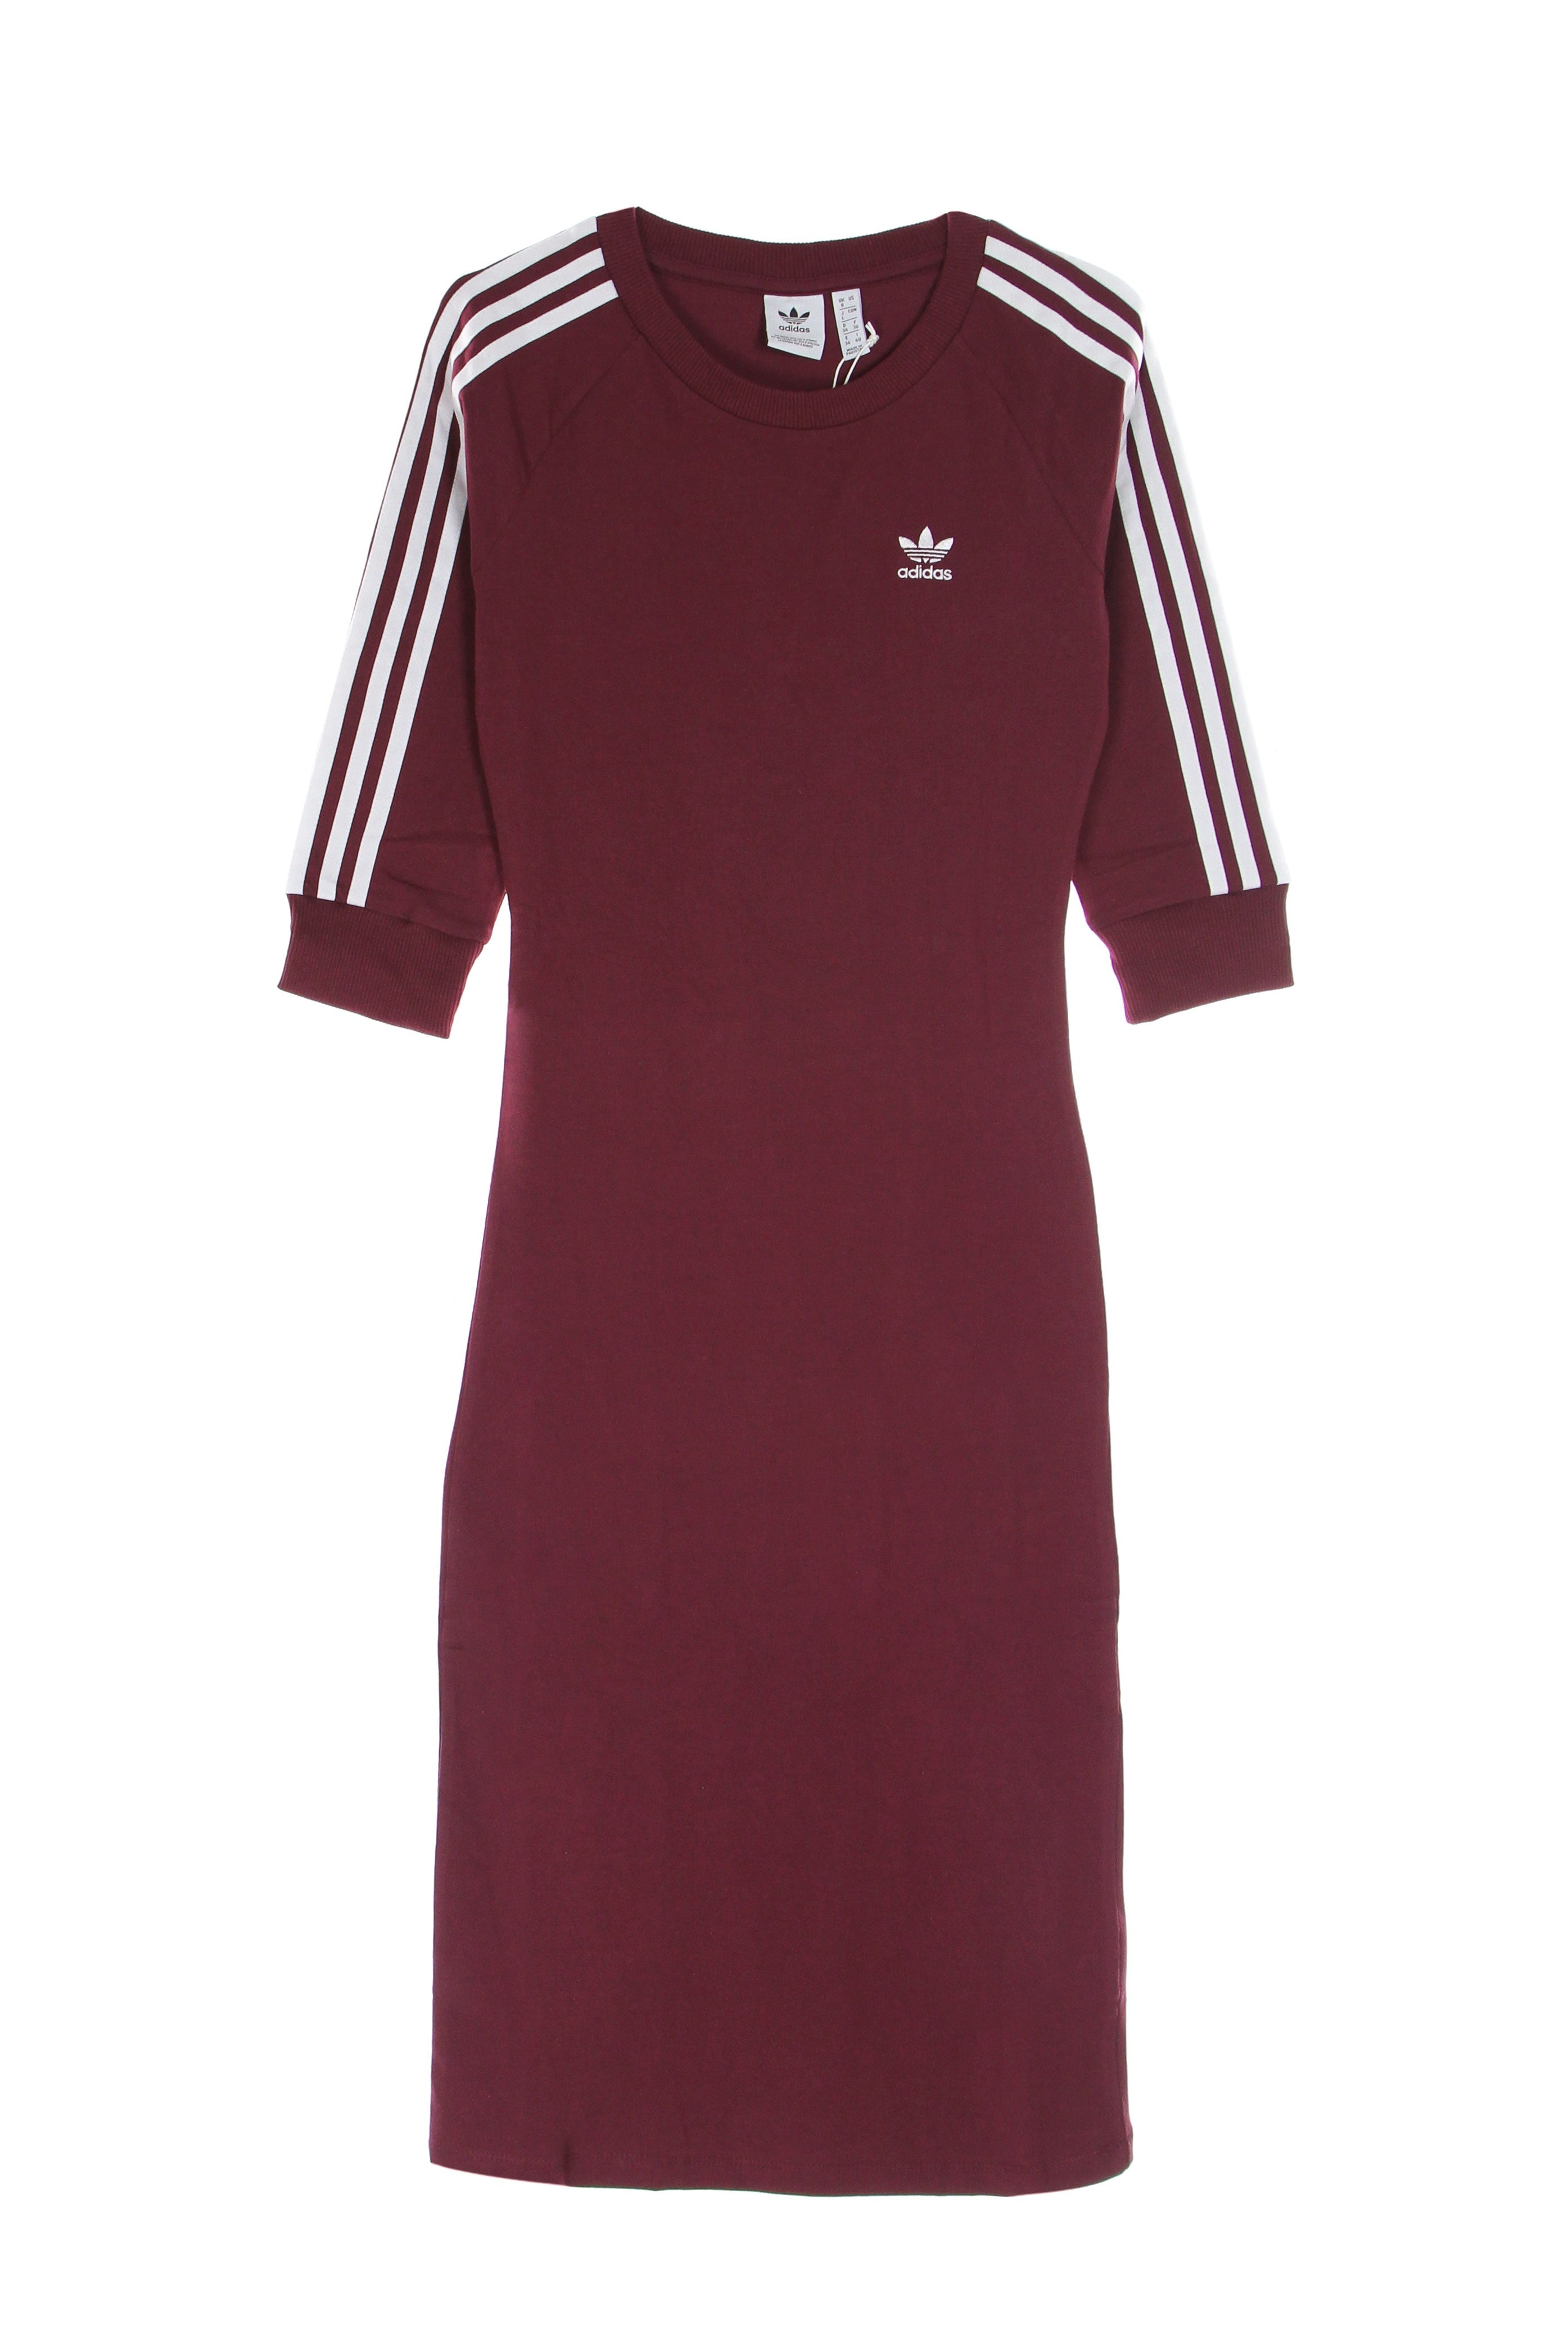 Adidas, Vestito Donna 3 Stripes Adicolor Dress, Victory Crimson